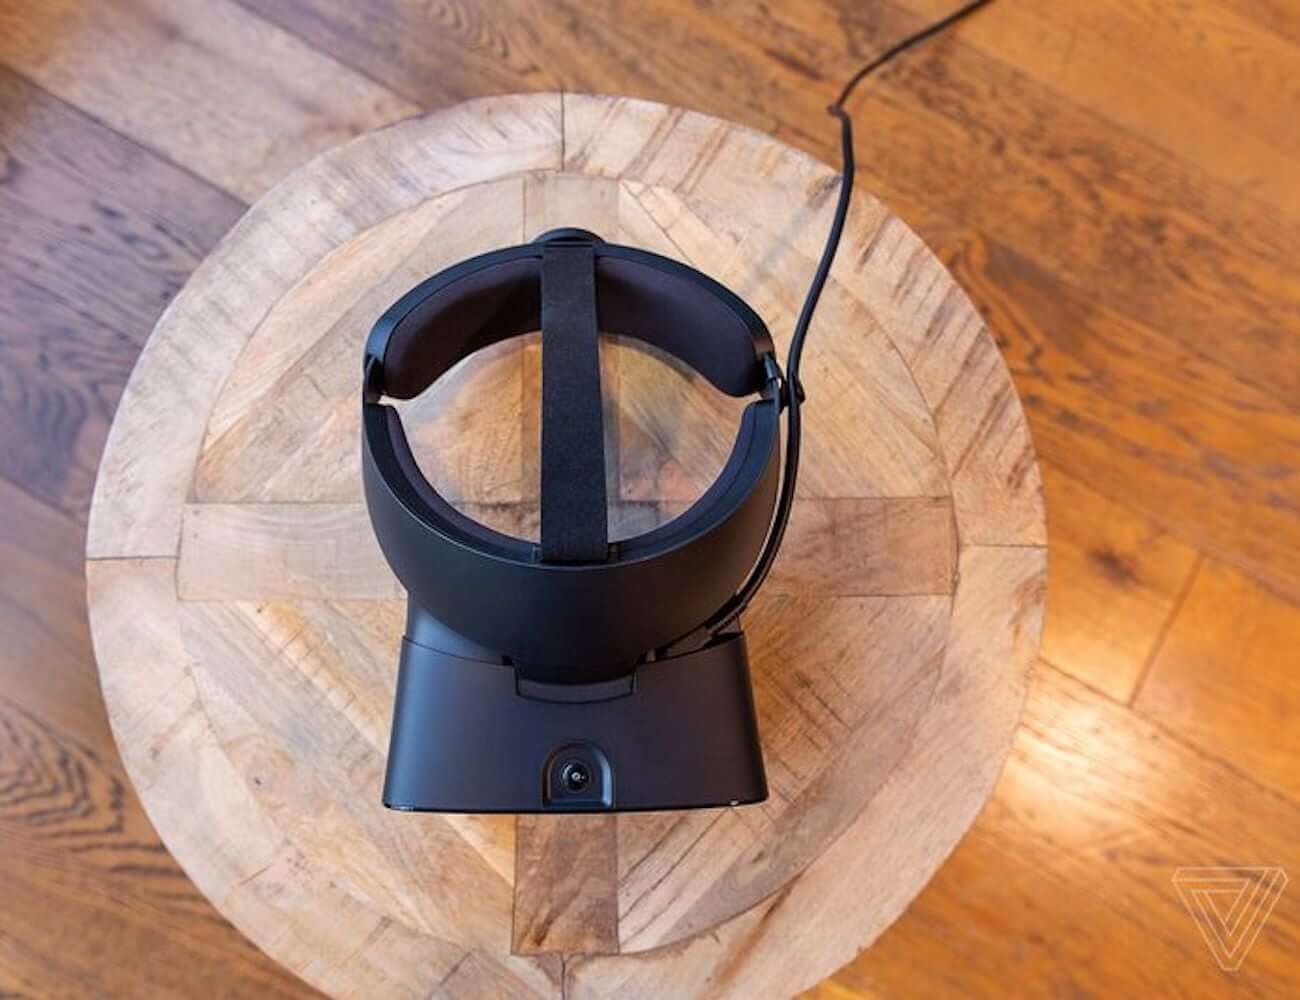 Oculus-Rift-S-High-Resolution-VR-Headset-03